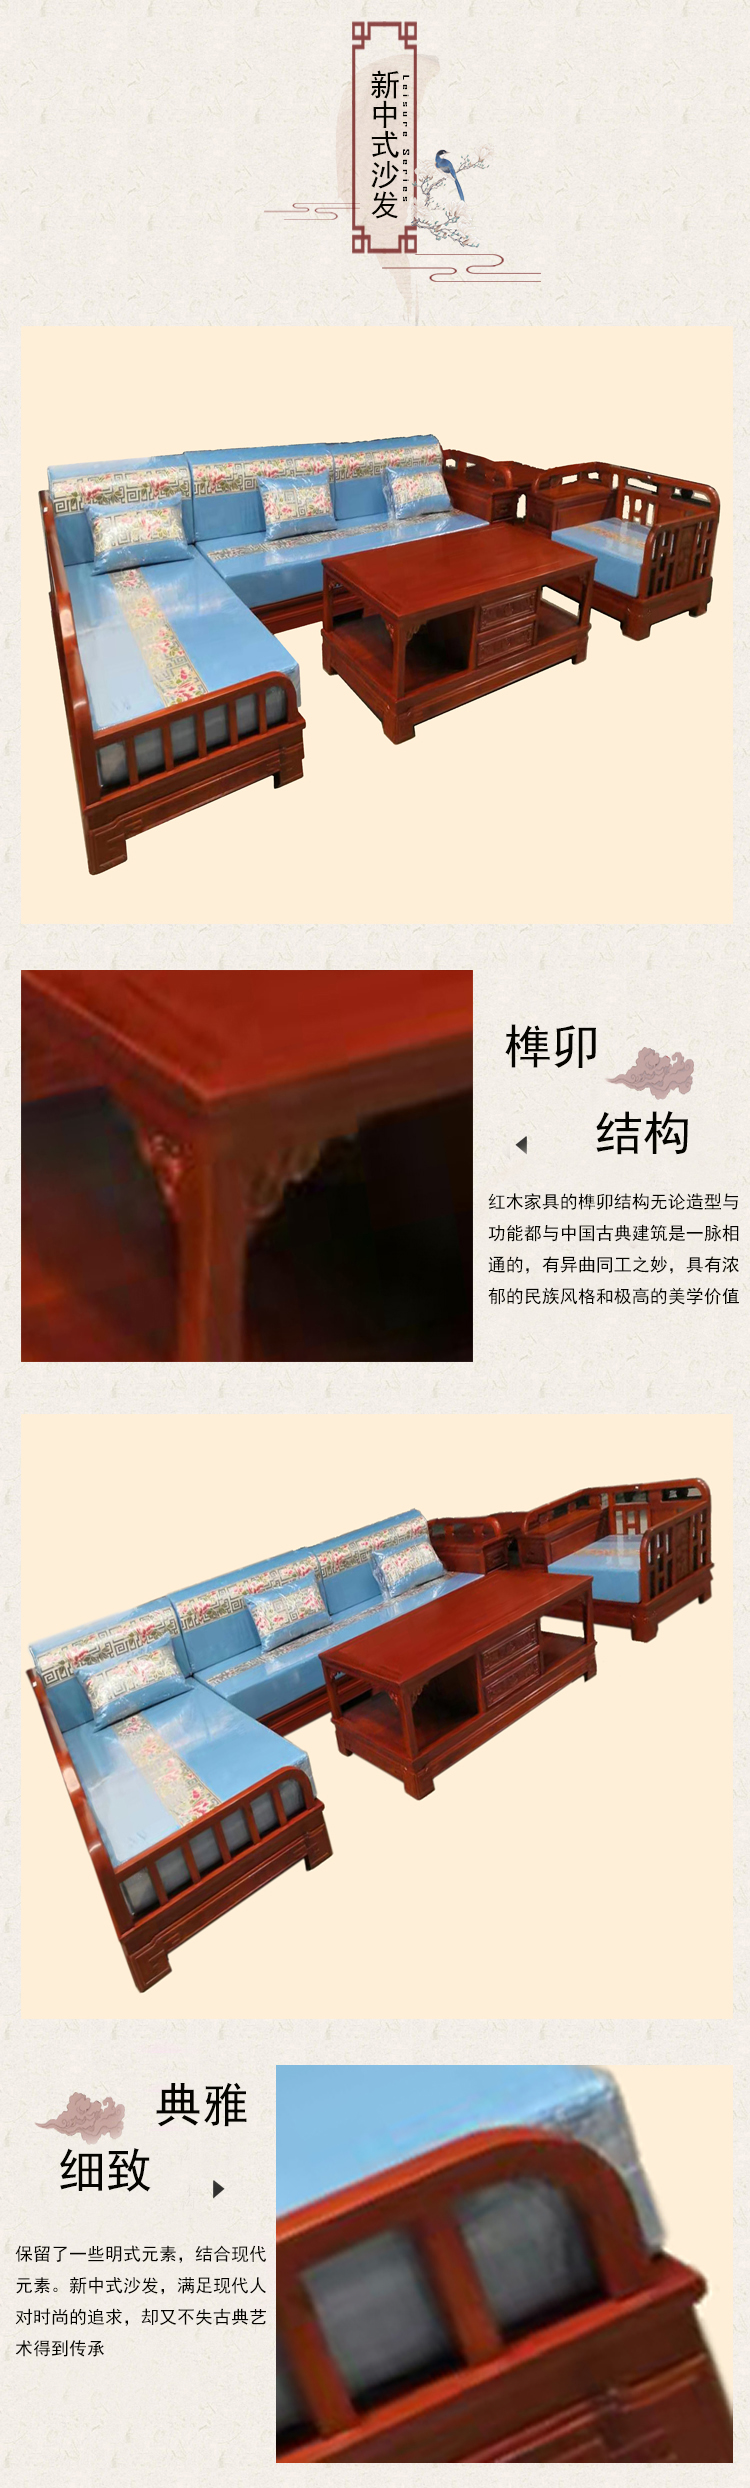 新中式沙发图